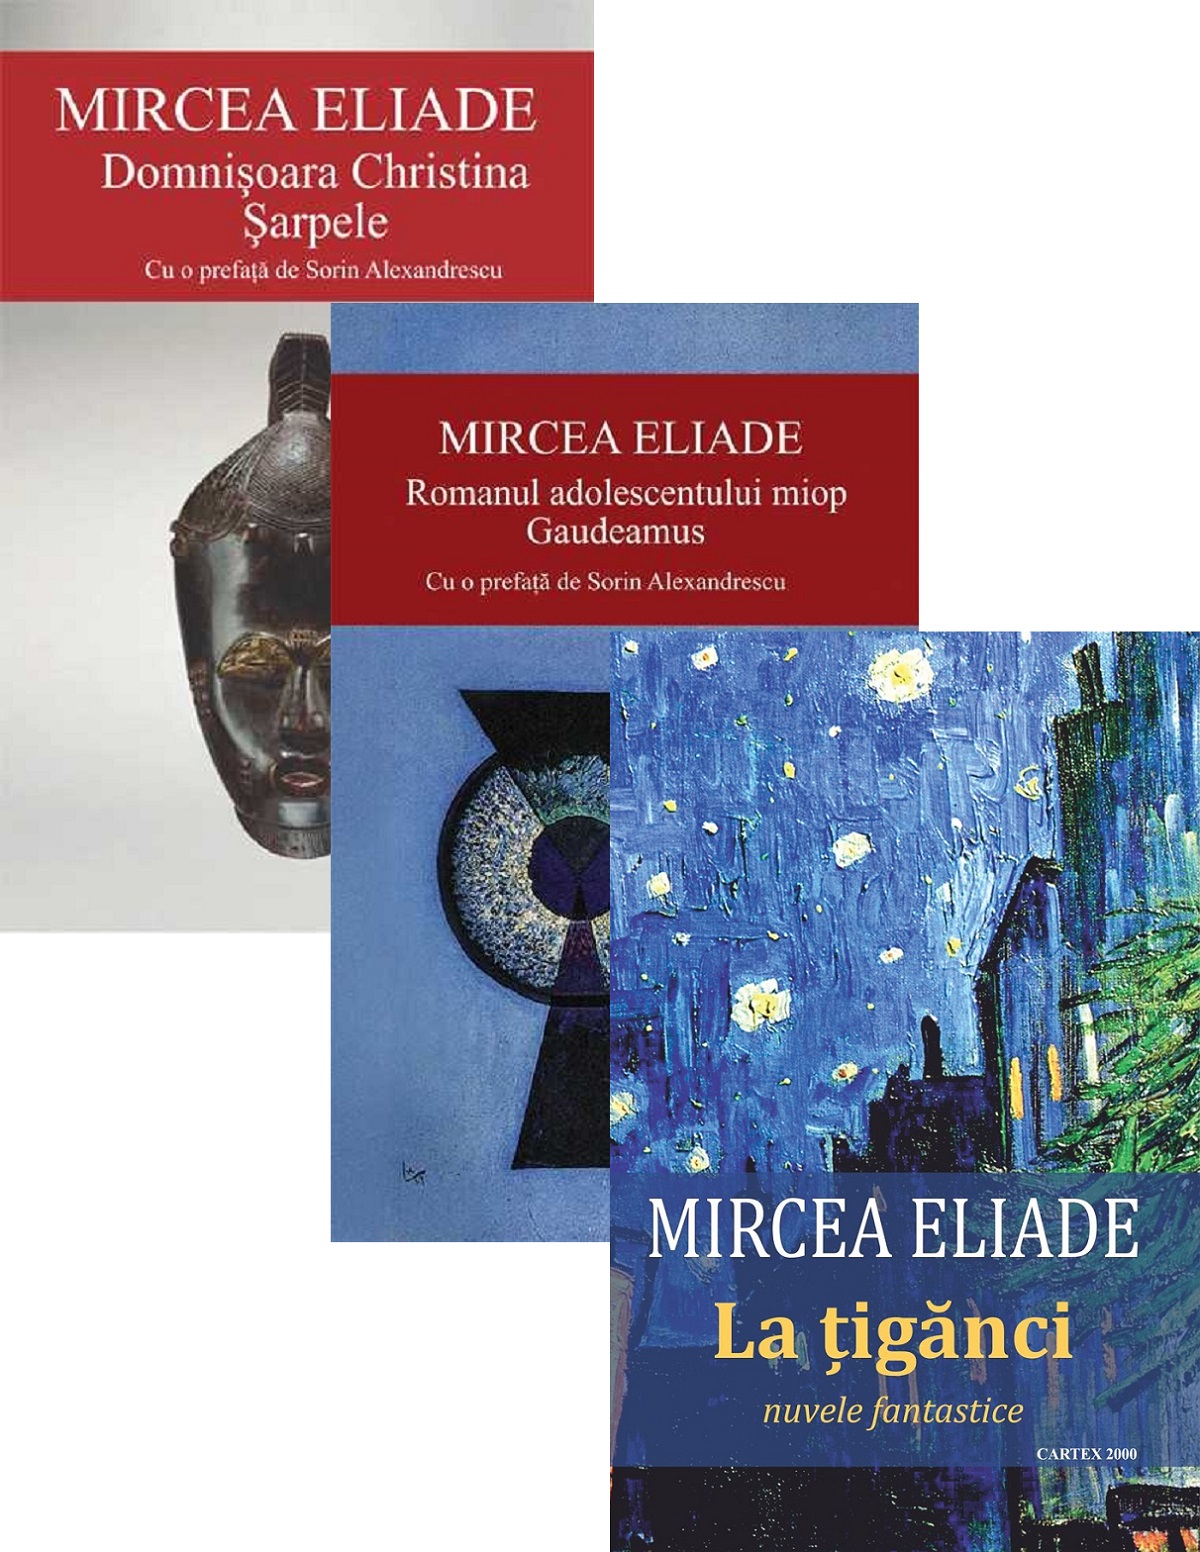 Pachet: Domnisoara Christina. Sarpele + Romanul adolescentului miop + La tiganci - Mircea Eliade